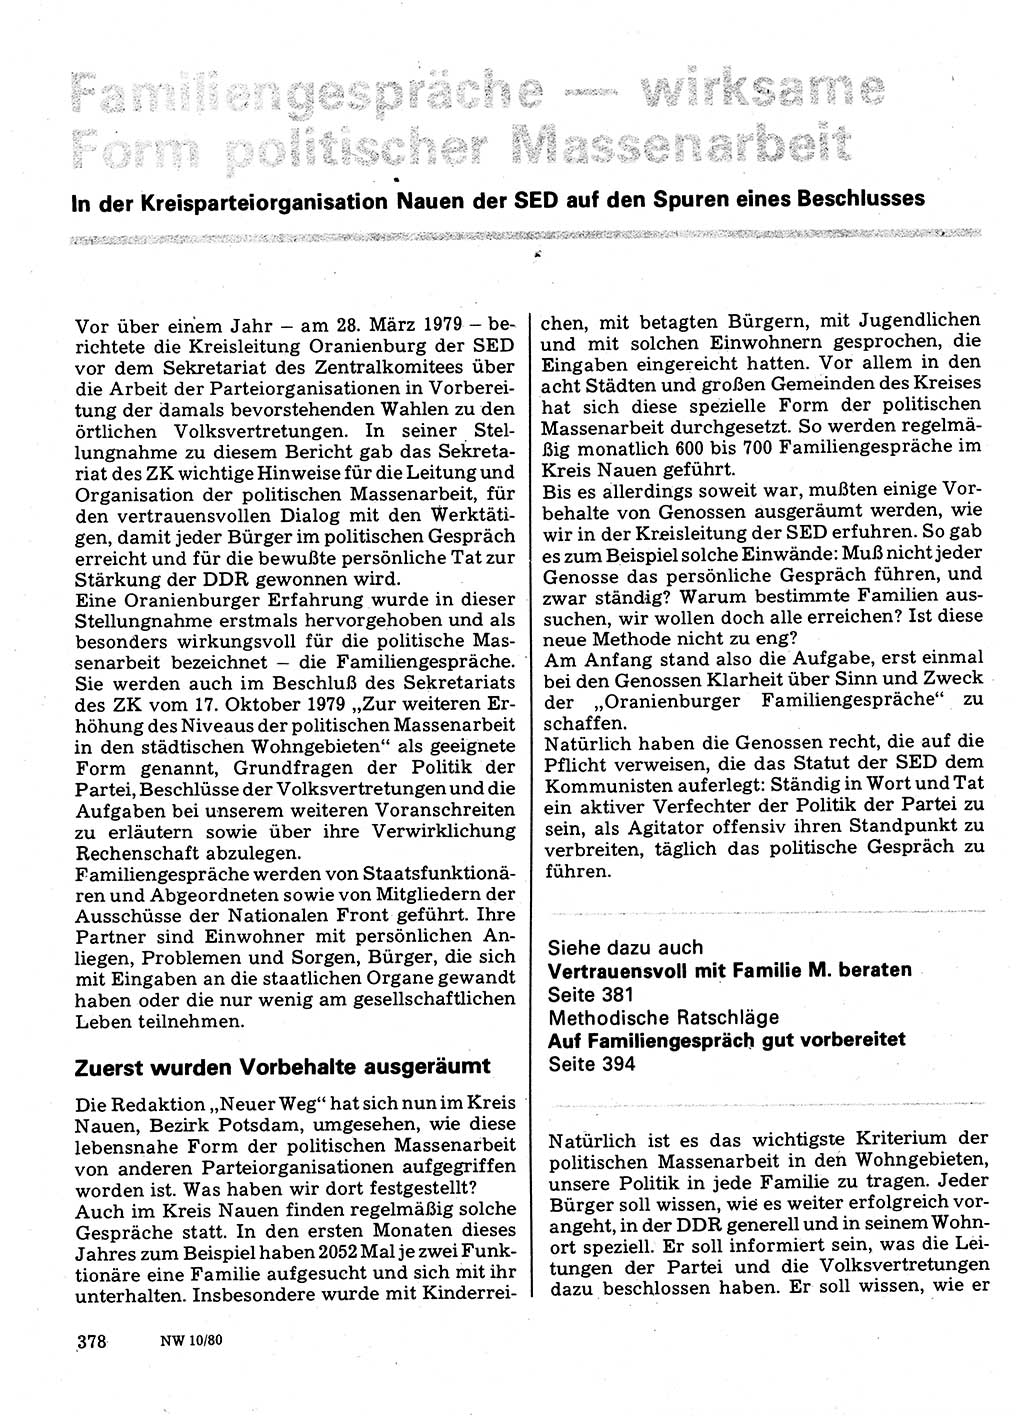 Neuer Weg (NW), Organ des Zentralkomitees (ZK) der SED (Sozialistische Einheitspartei Deutschlands) für Fragen des Parteilebens, 35. Jahrgang [Deutsche Demokratische Republik (DDR)] 1980, Seite 378 (NW ZK SED DDR 1980, S. 378)